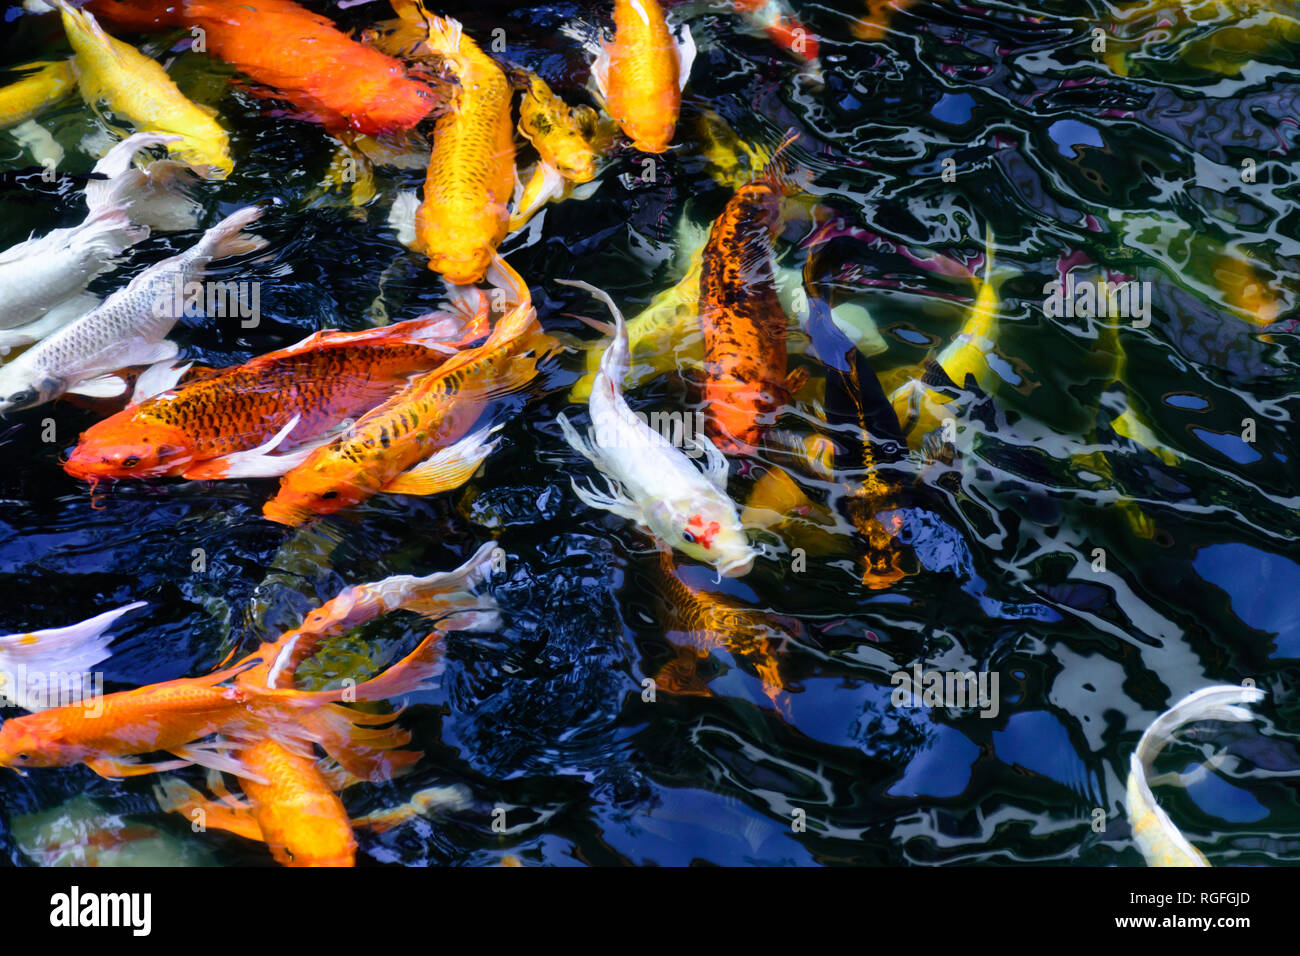 Fantaisie colorée ou poisson carpe koi de poissons nagent. Koi de poissons nager dans l'étang. Vue de dessus et effectuer un zoom avant pour fermer le haut. L'eau est claire et noire reflecti Banque D'Images